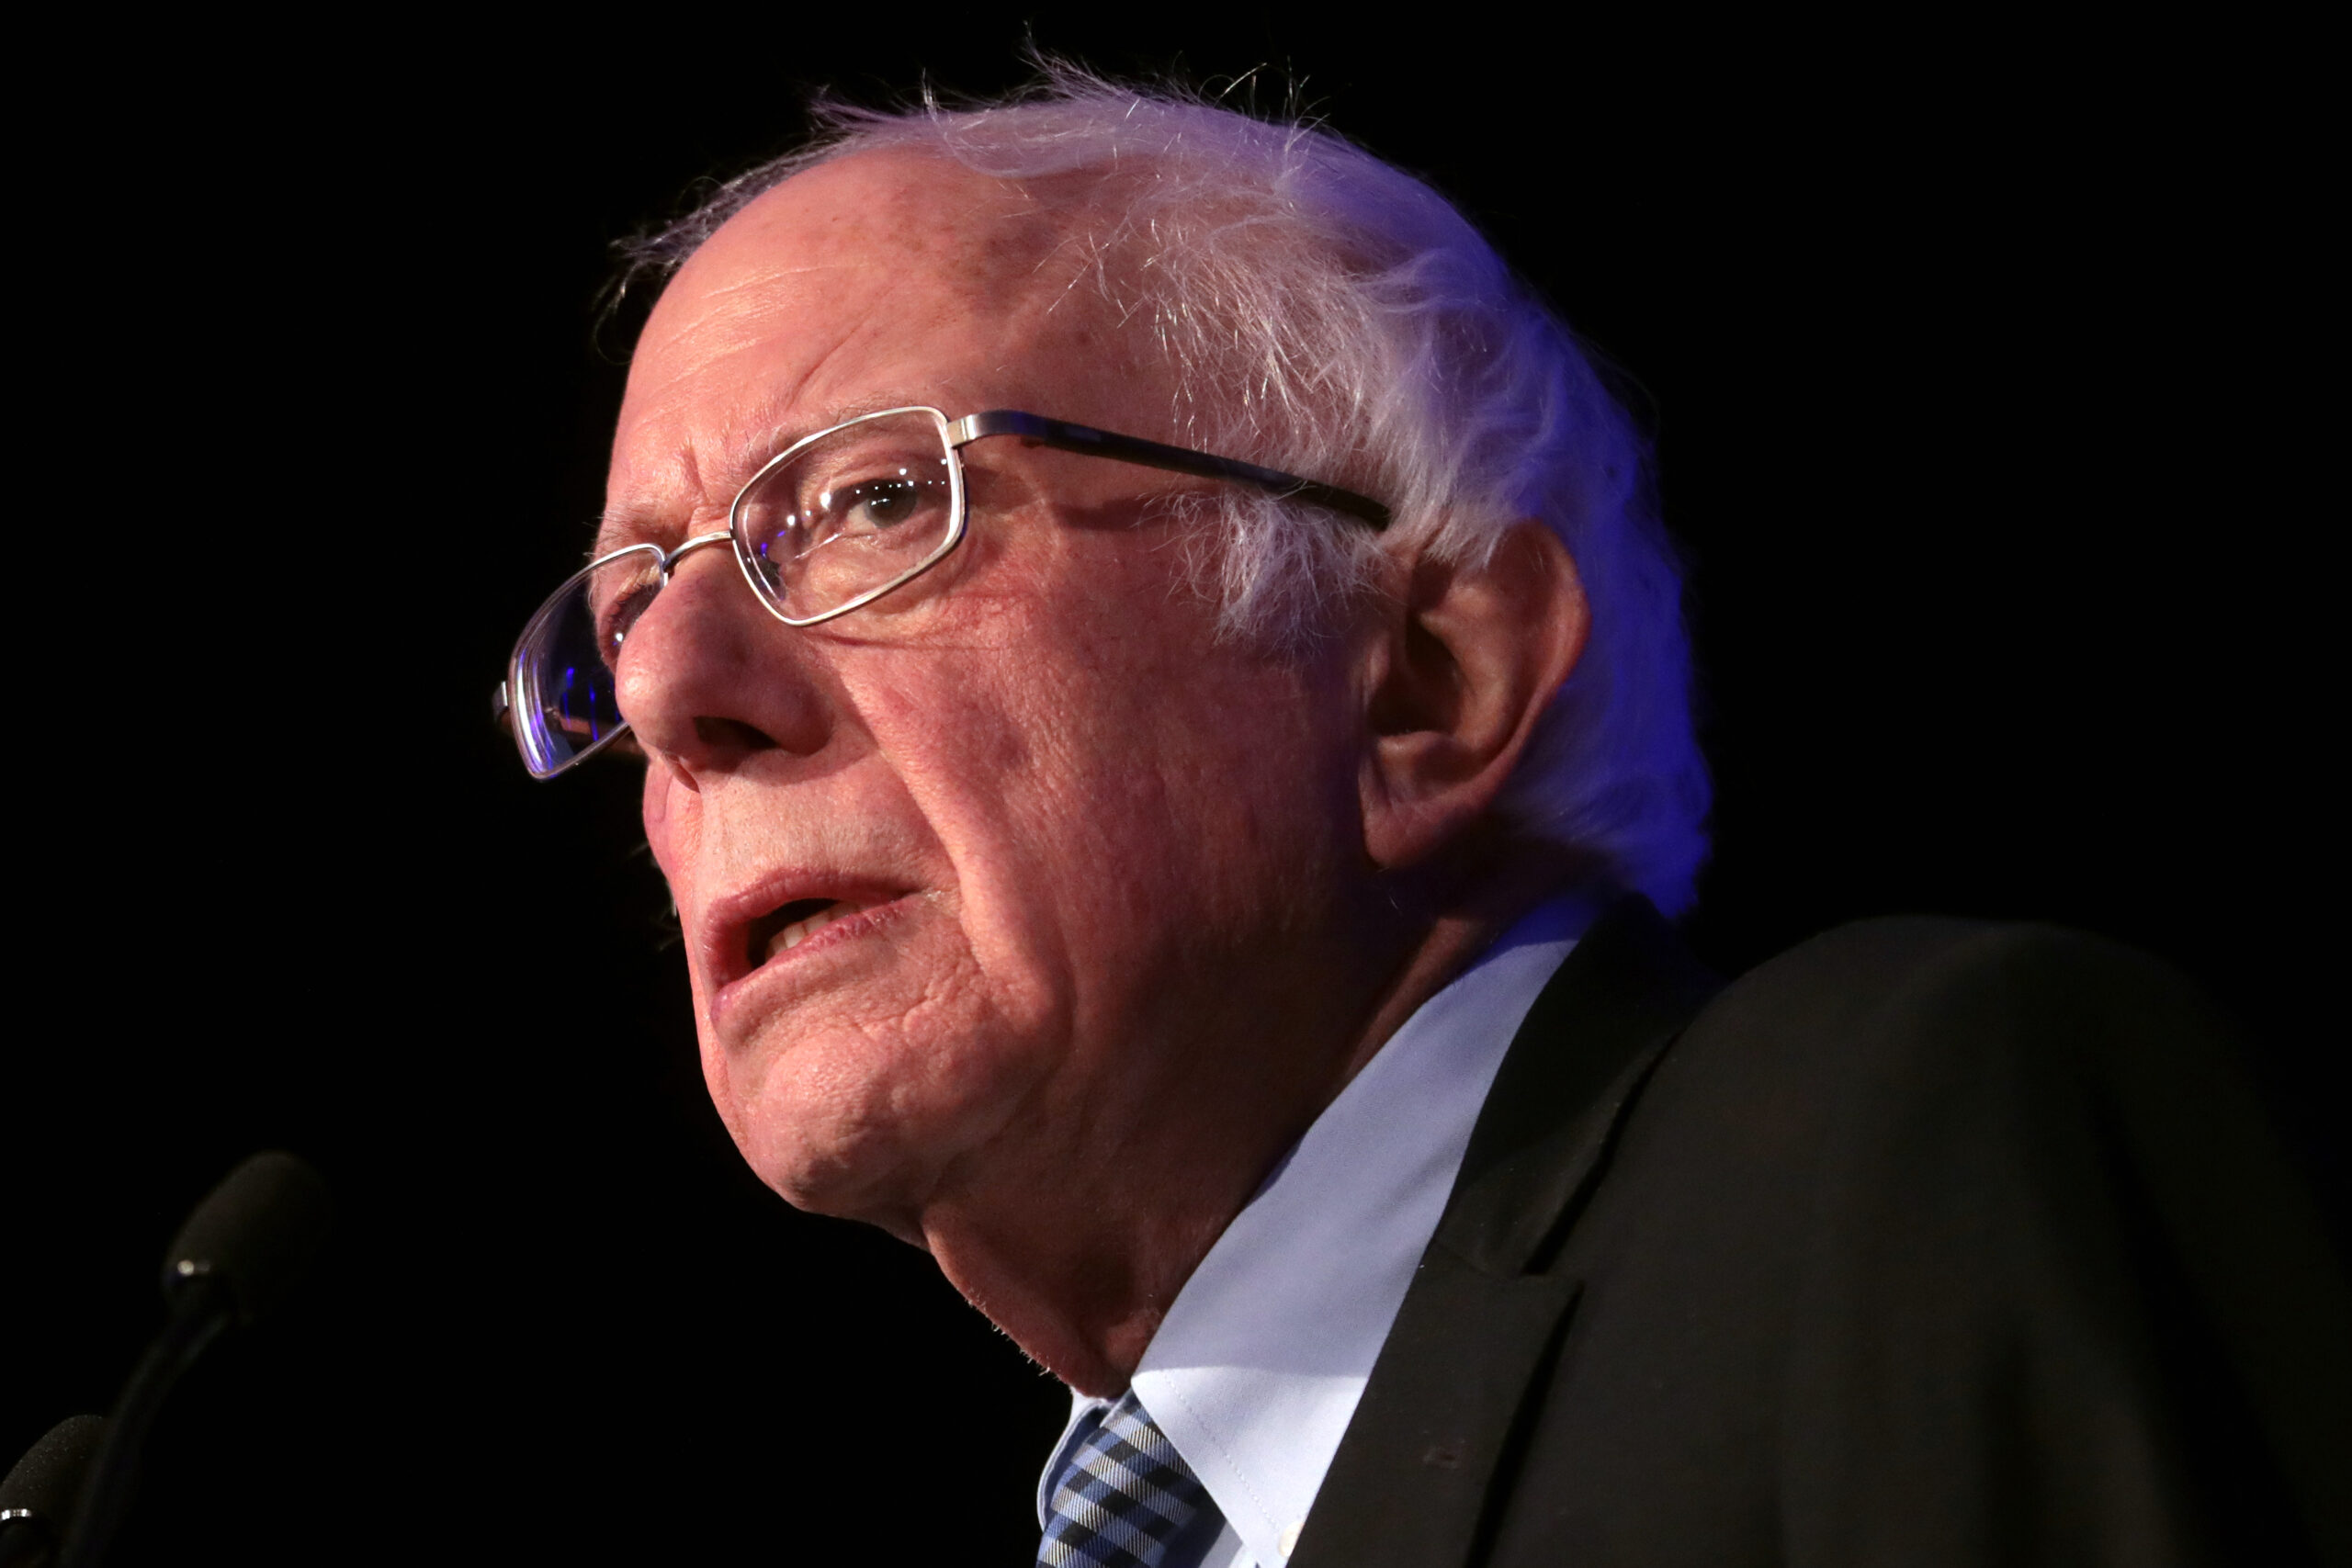 Sanders ends his presidential bid